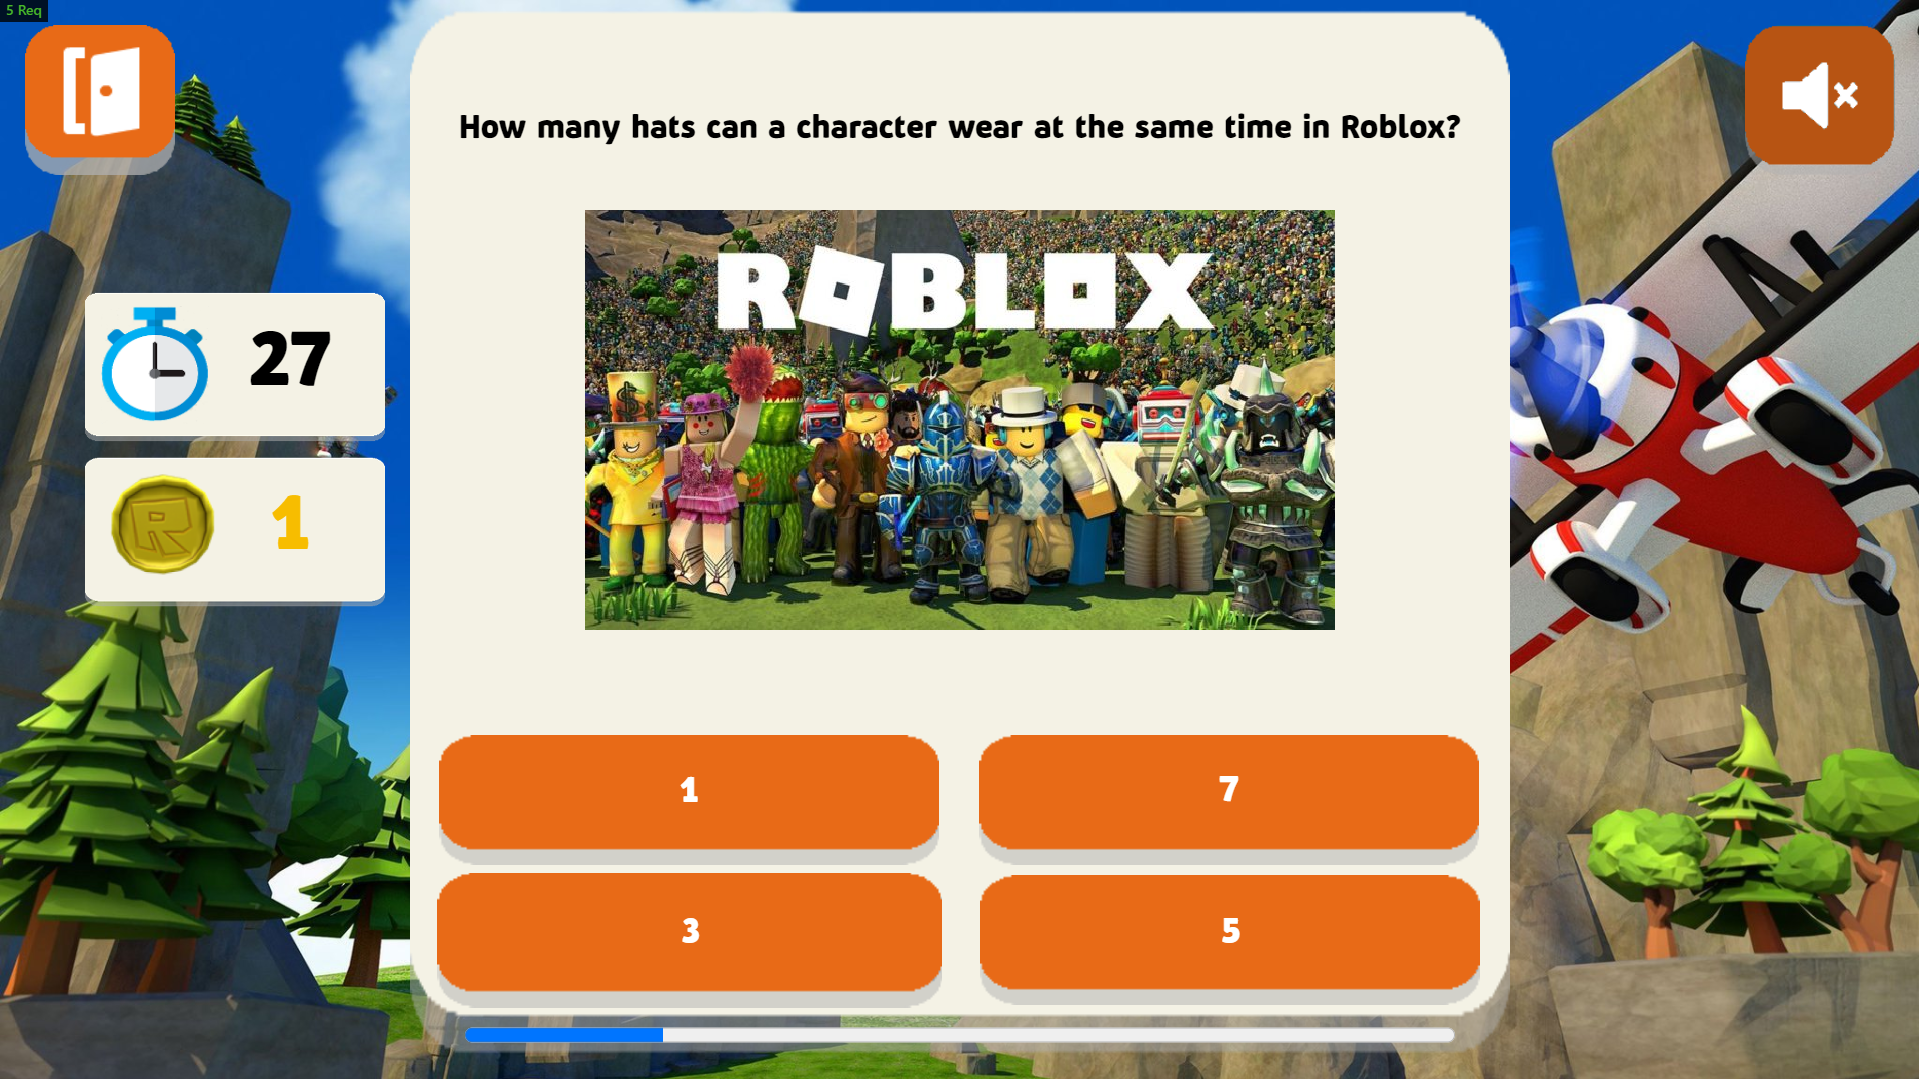 Tham gia trò chơi Roblox tuyệt vời trên Yandex Games hoàn toàn miễn phí và cập nhật mới nhất. Sở hữu những chiếc avatar đẹp mắt với 7 robux chỉ đơn giản chưa đầy một nốt nhạc. Hãy đến và khám phá những hành trình thần tượng trên Roblox từ ngay hôm nay!